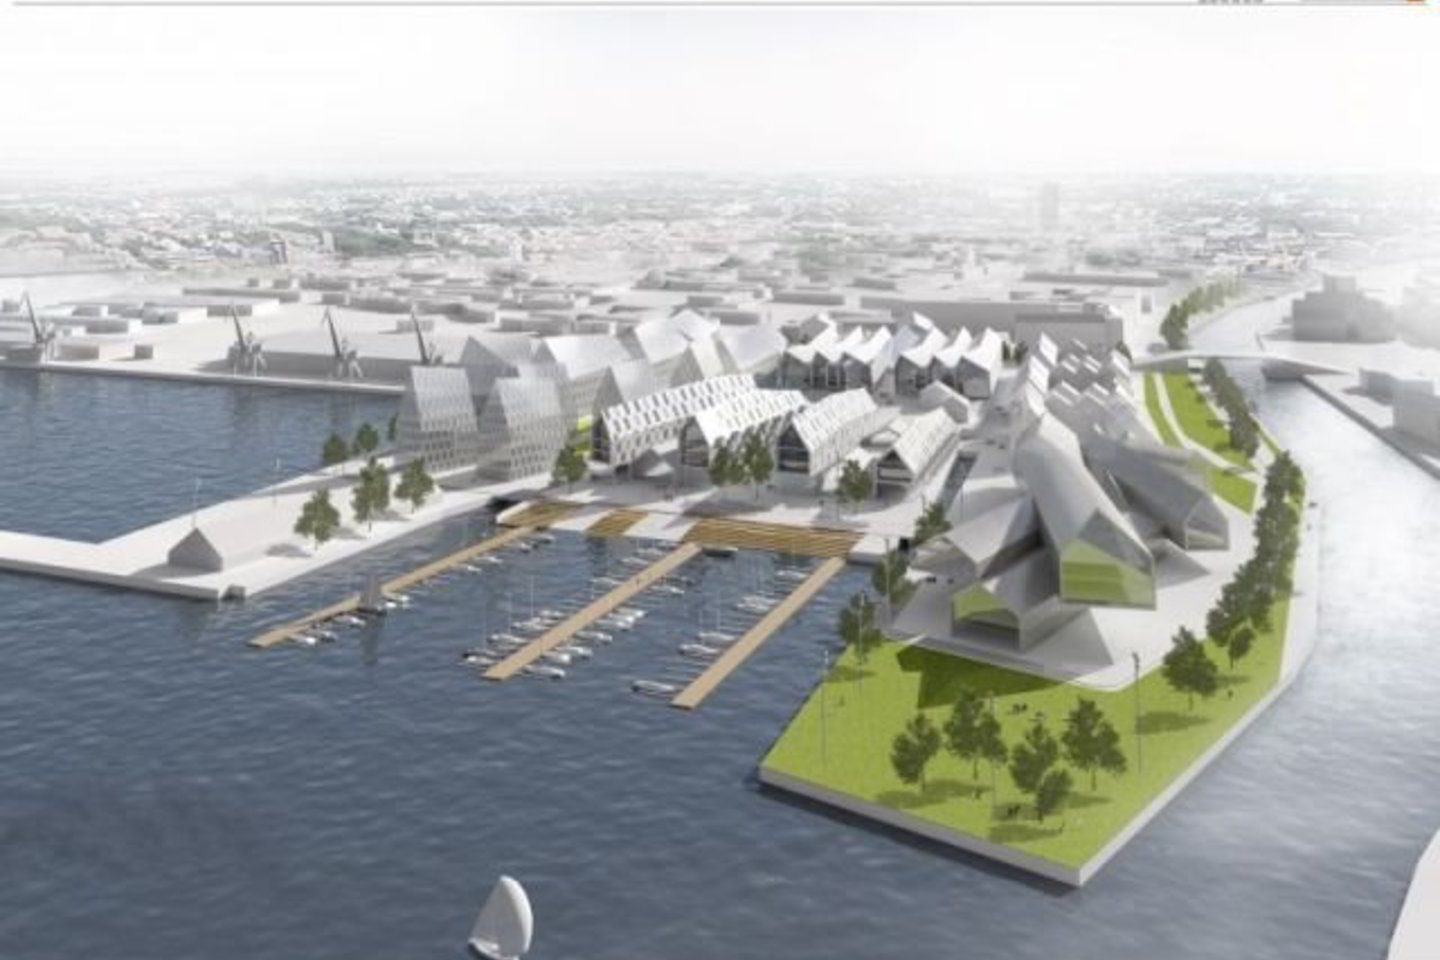 Į "Memelio miesto" projektą planuota investuoti beveik 600 mln. litų, tačiau planai liko neįgyvendinti.<br>E.Petkutė